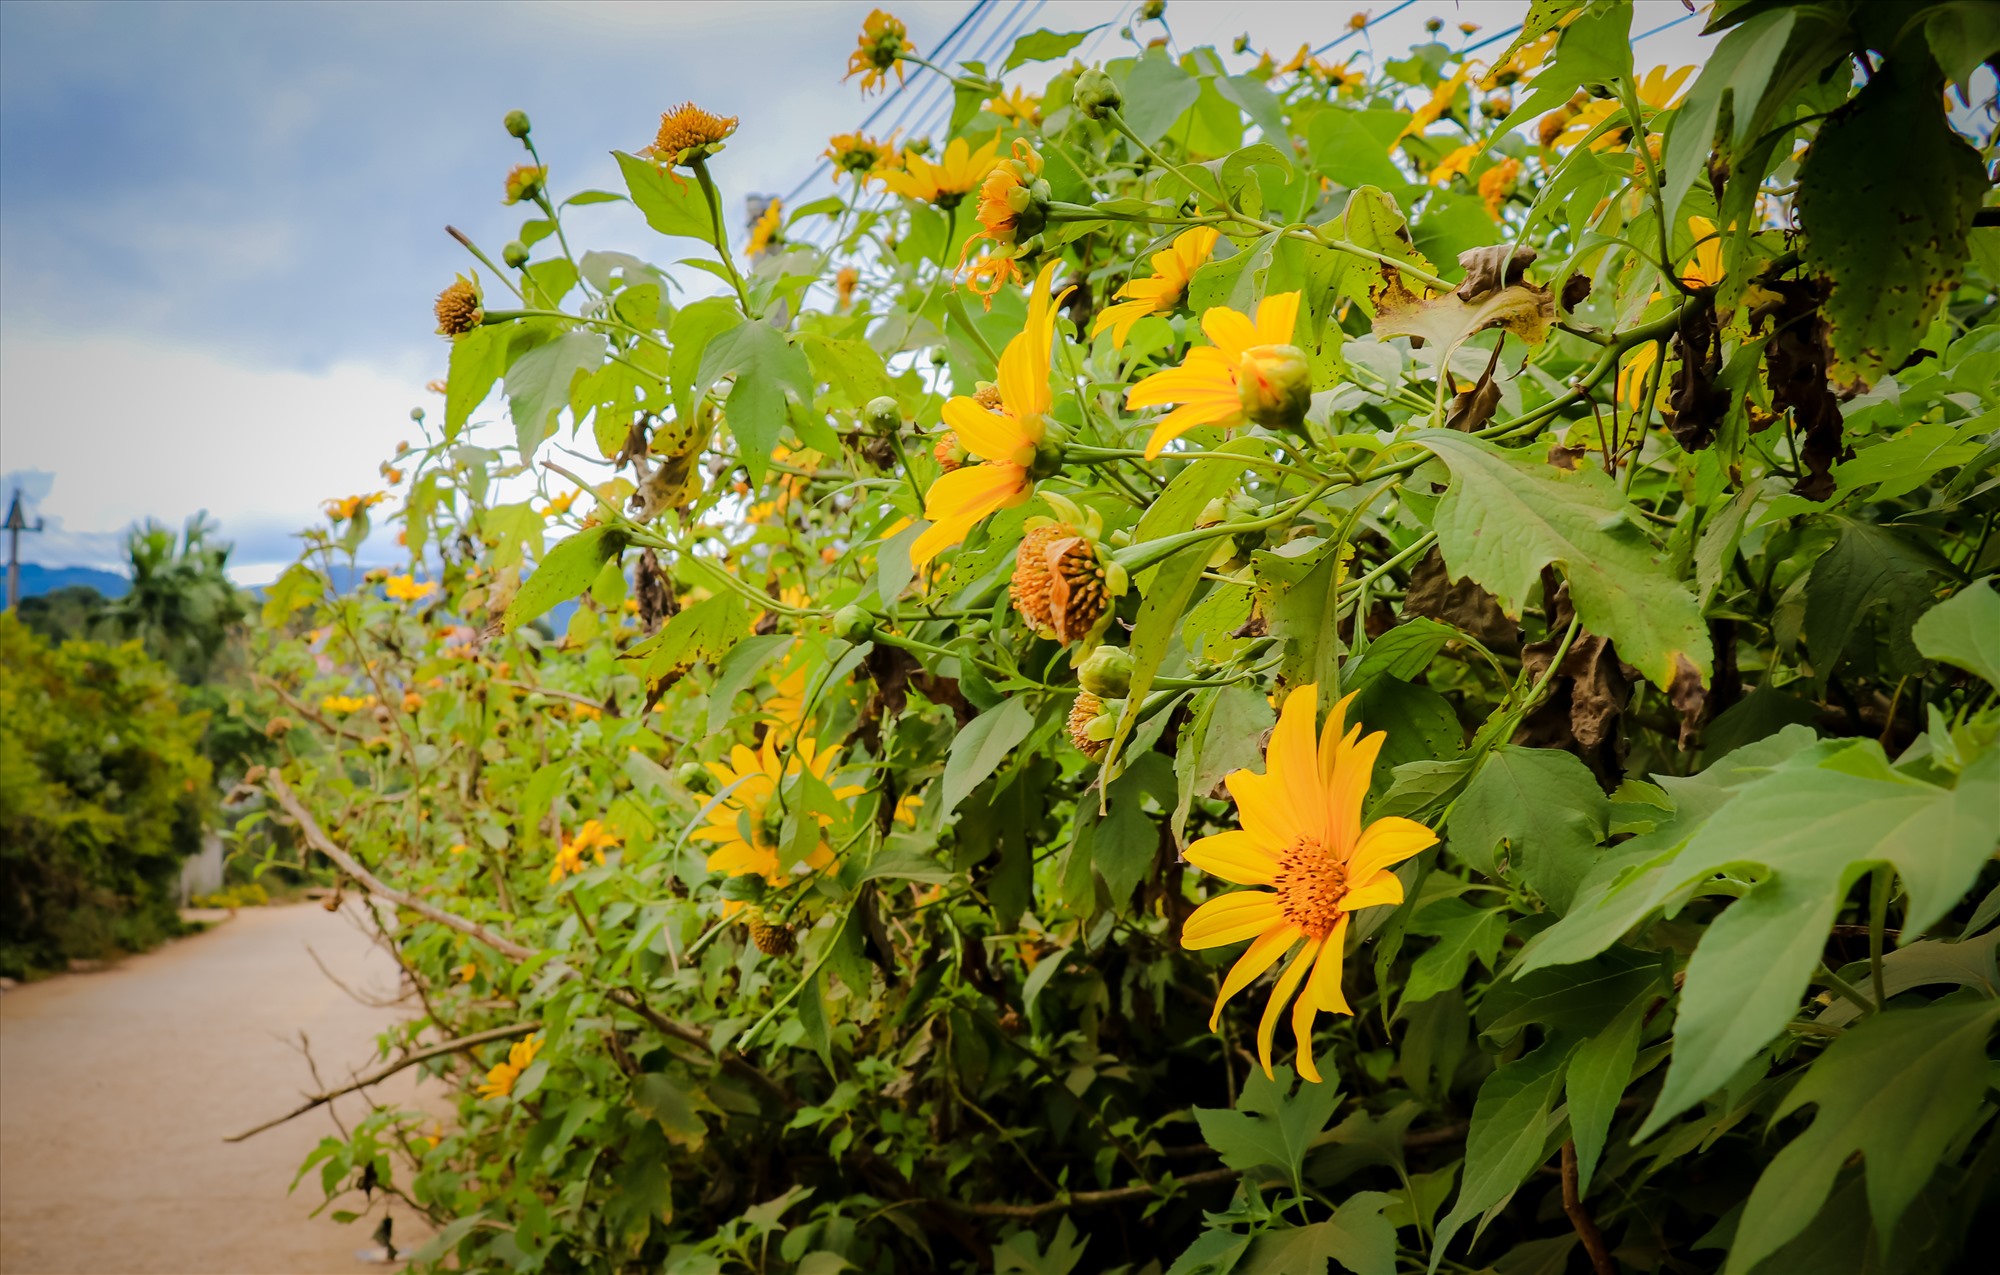 Hoa dã quỳ còn có các tên gọi khác như cúc quỳ, sơn quỳ, hướng dương dại..., thường có màu vàng cam.